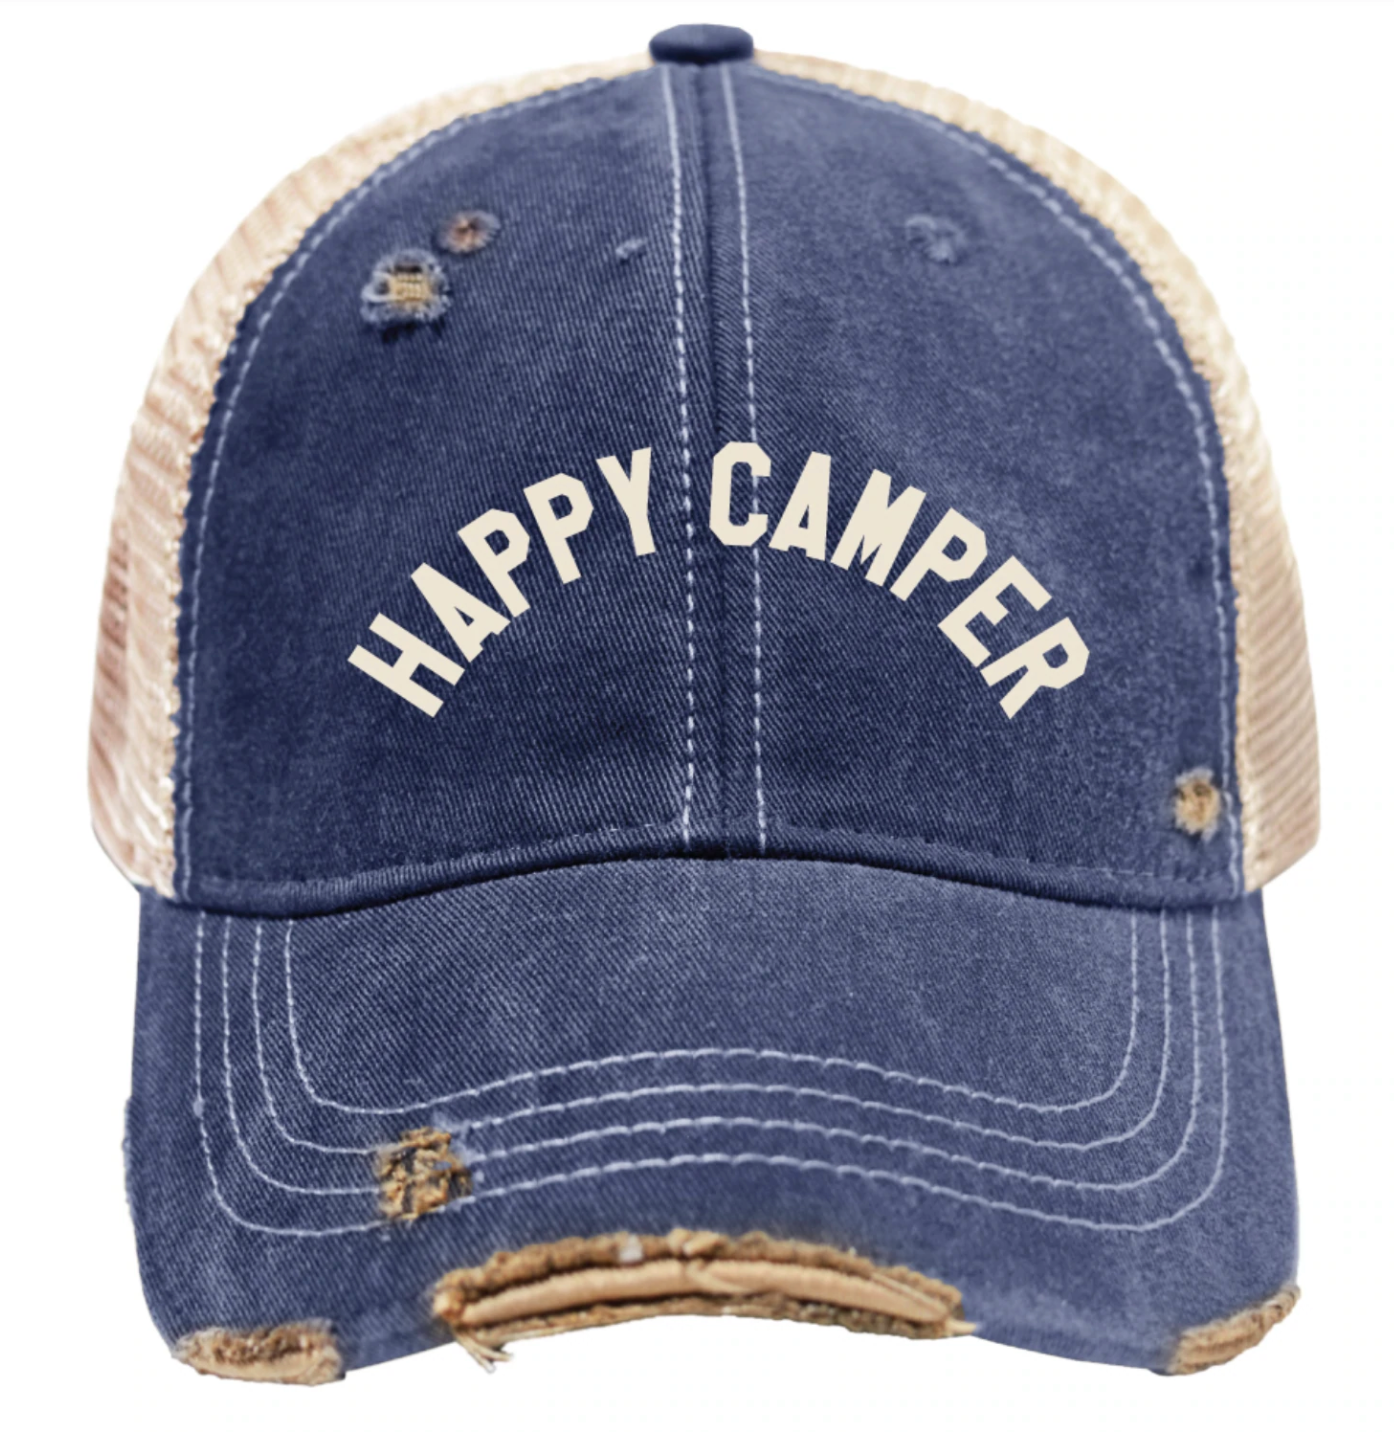 Happy Camper Snap Back Trucker Cap